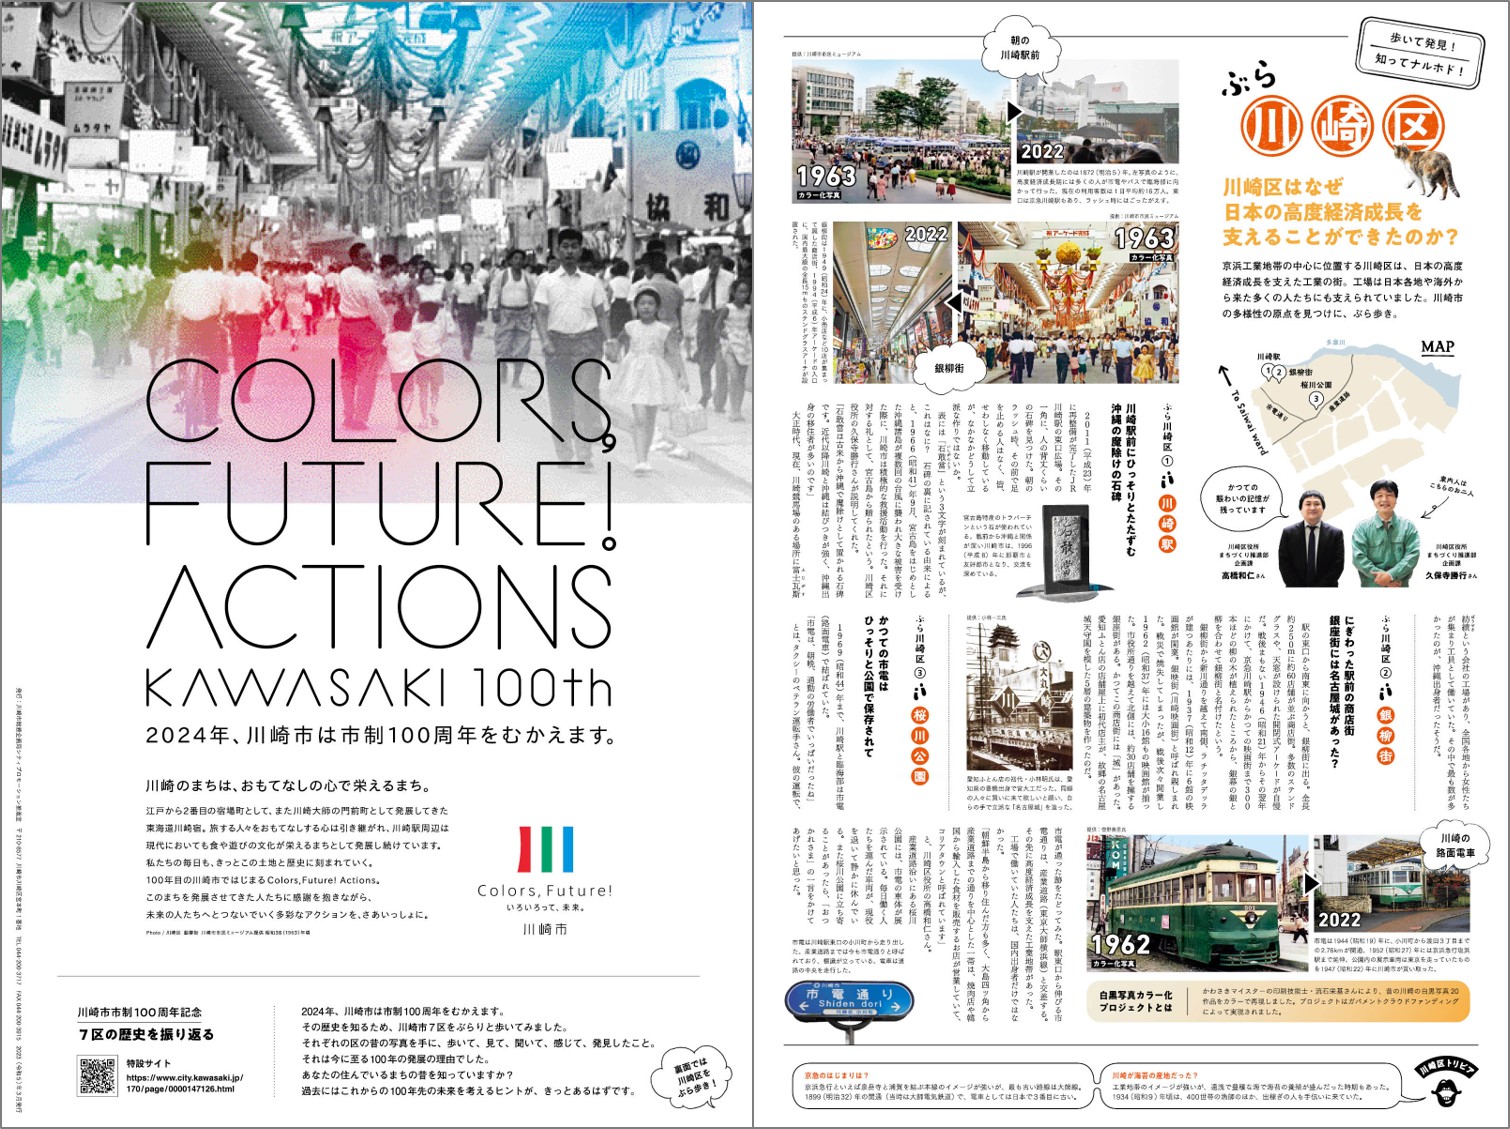 川崎市市制100周年PR広報紙～7区の歴史を振り返る～』を発行しました 